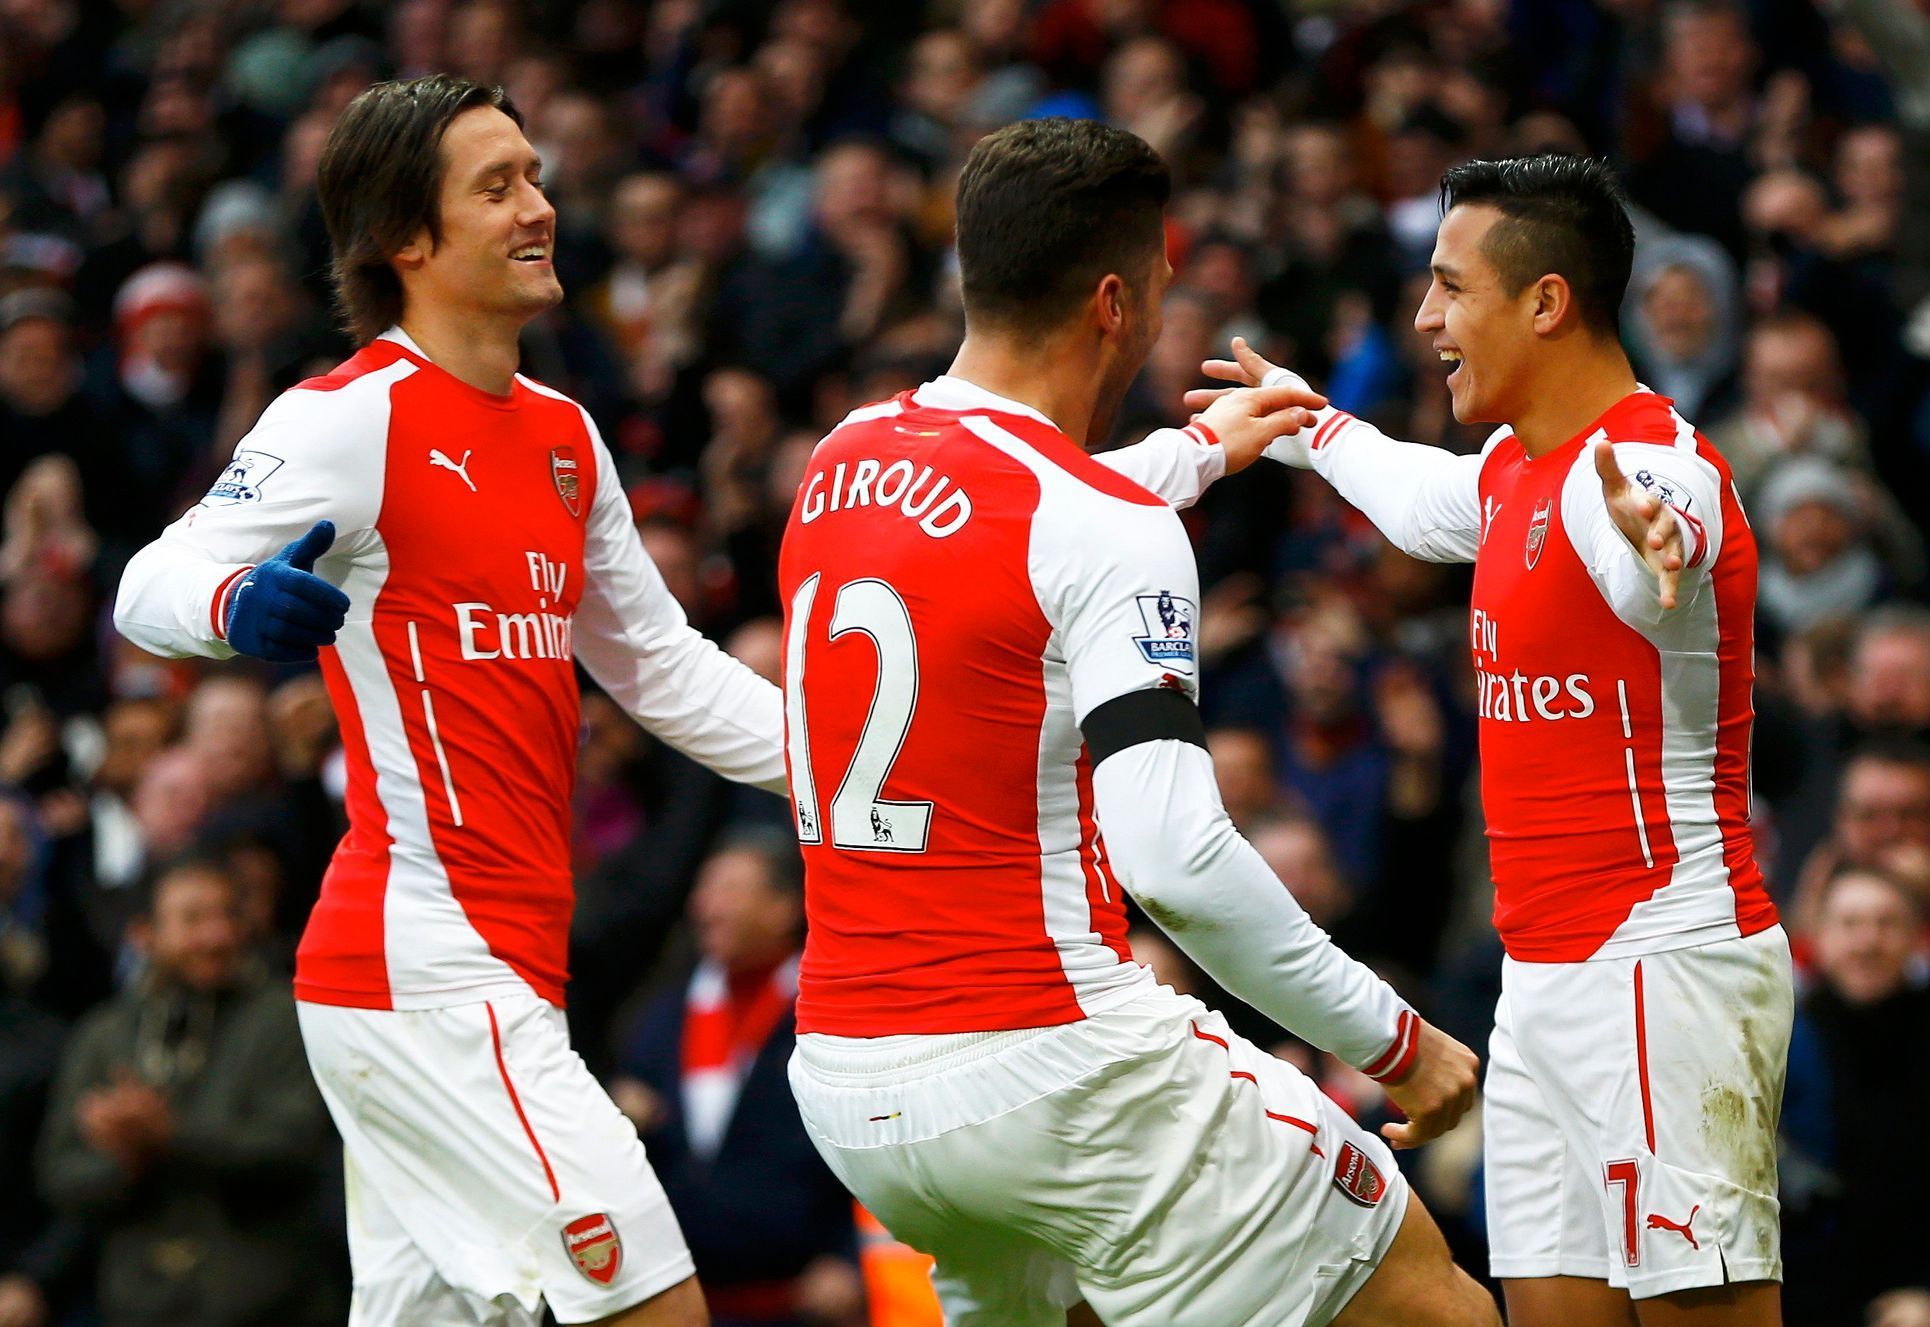 Hráči Arsenalu slaví gól (Sánchez, Rosický, Giroud)